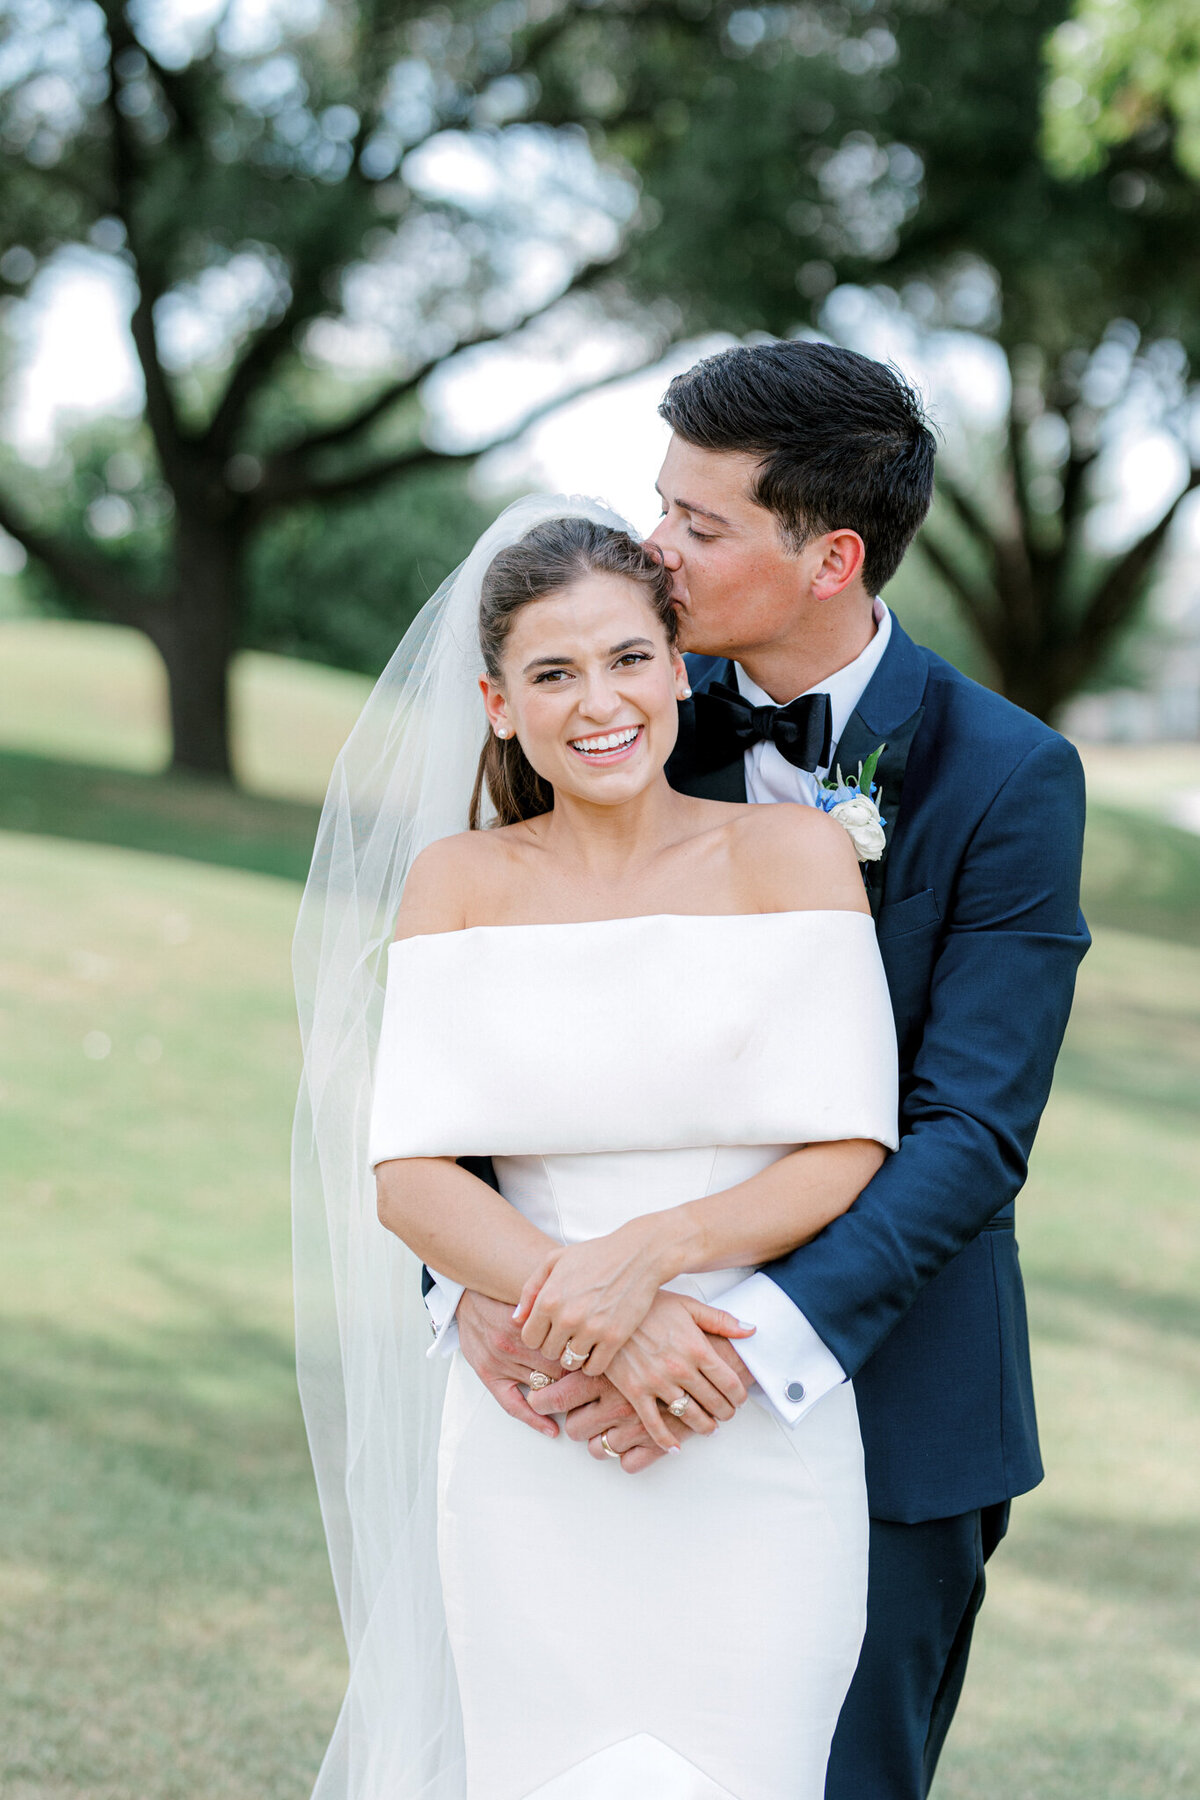 Annie & Logan's Wedding | Dallas Wedding Photographer | Sami Kathryn Photography-3